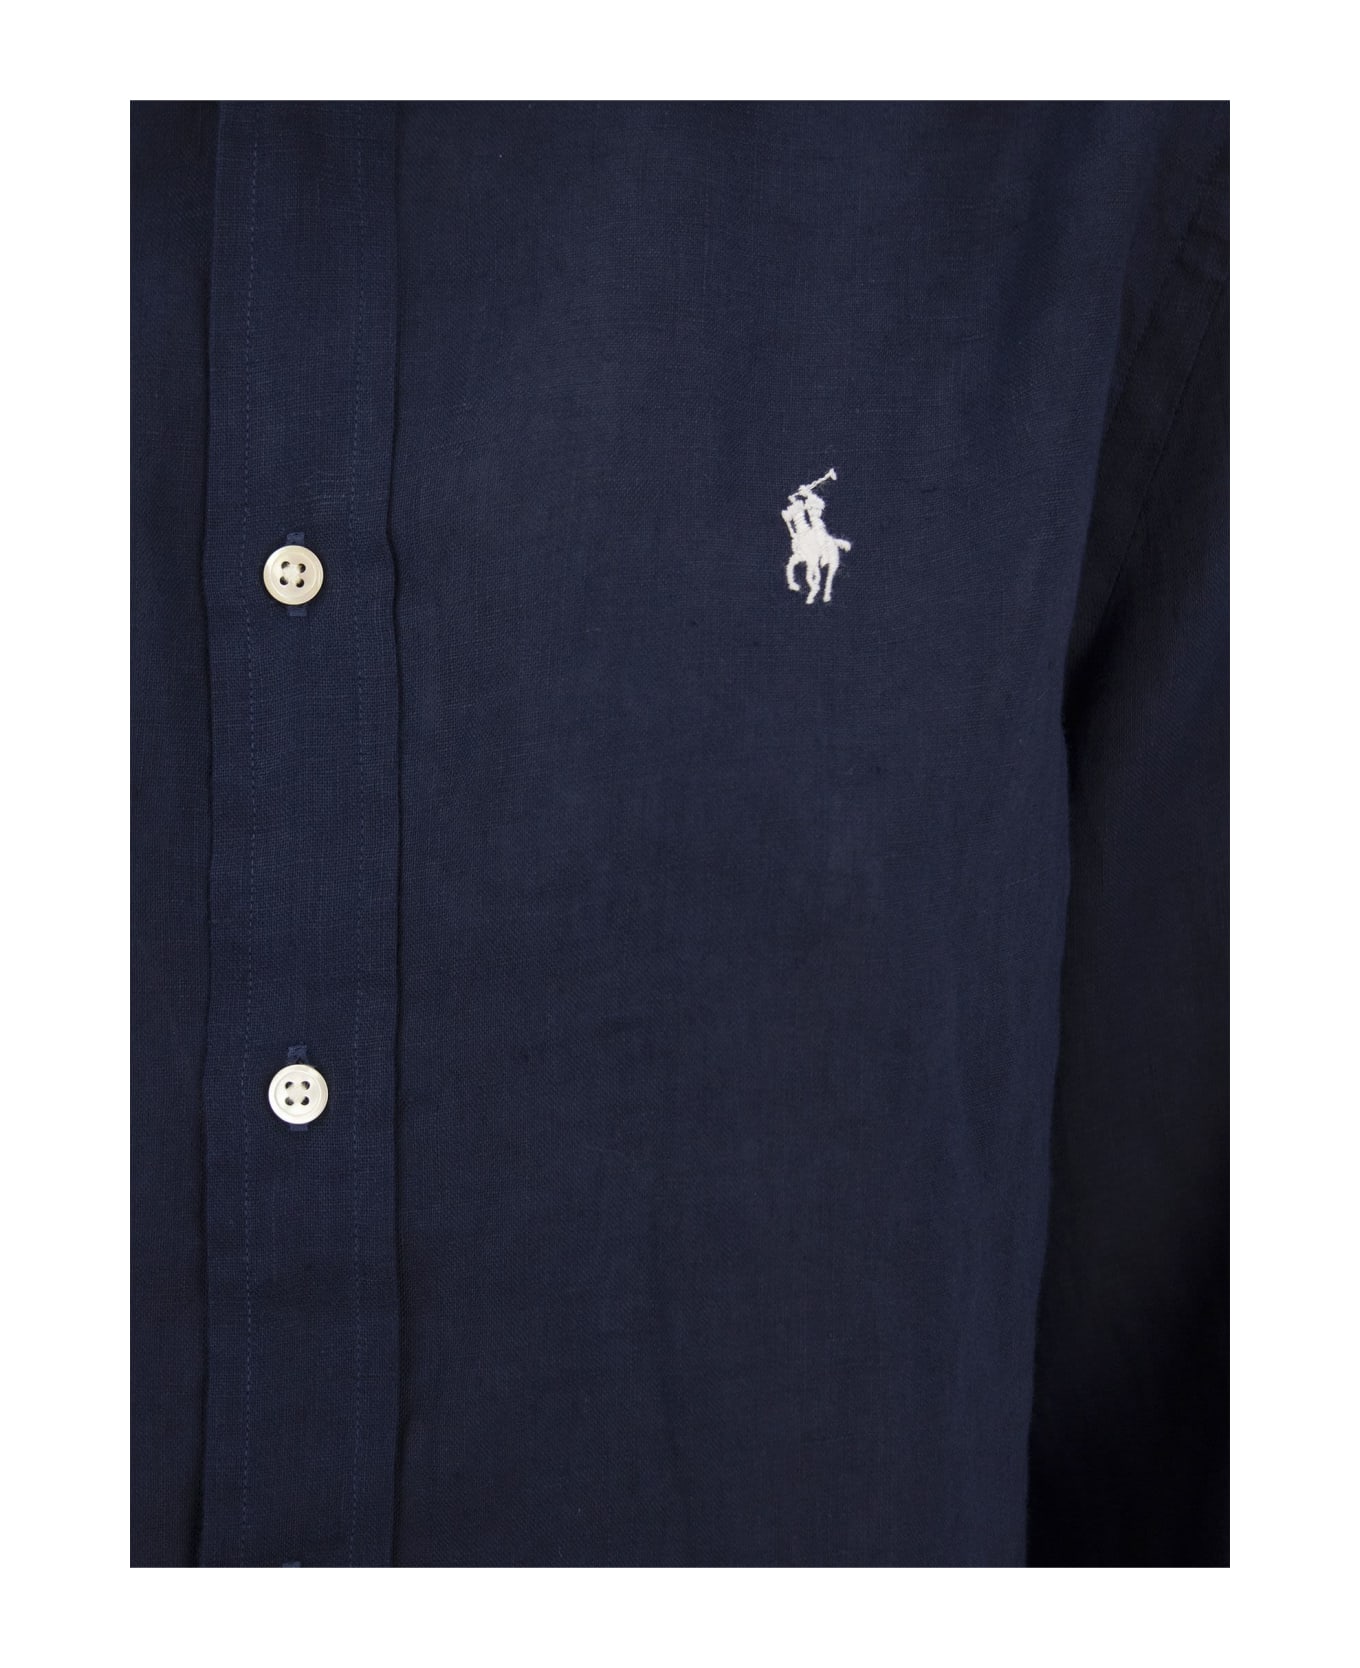 Ralph Lauren Linen Shirt - Blue シャツ